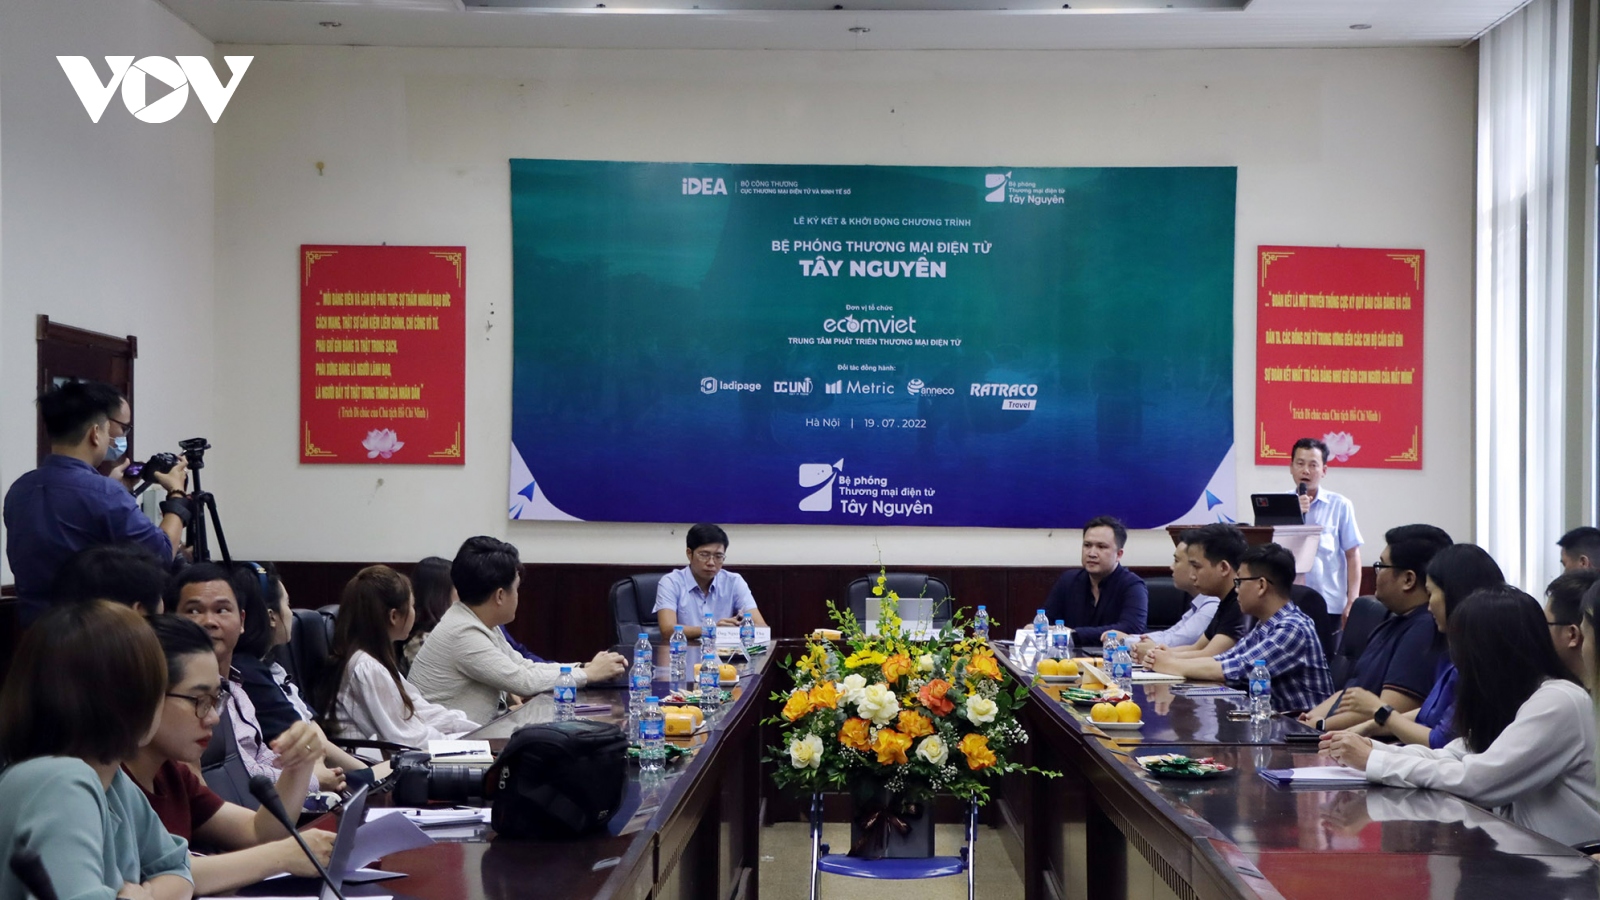 Đào tạo kỹ năng thương mại điện tử cho 1.500 doanh nghiệp 5 tỉnh Tây Nguyên